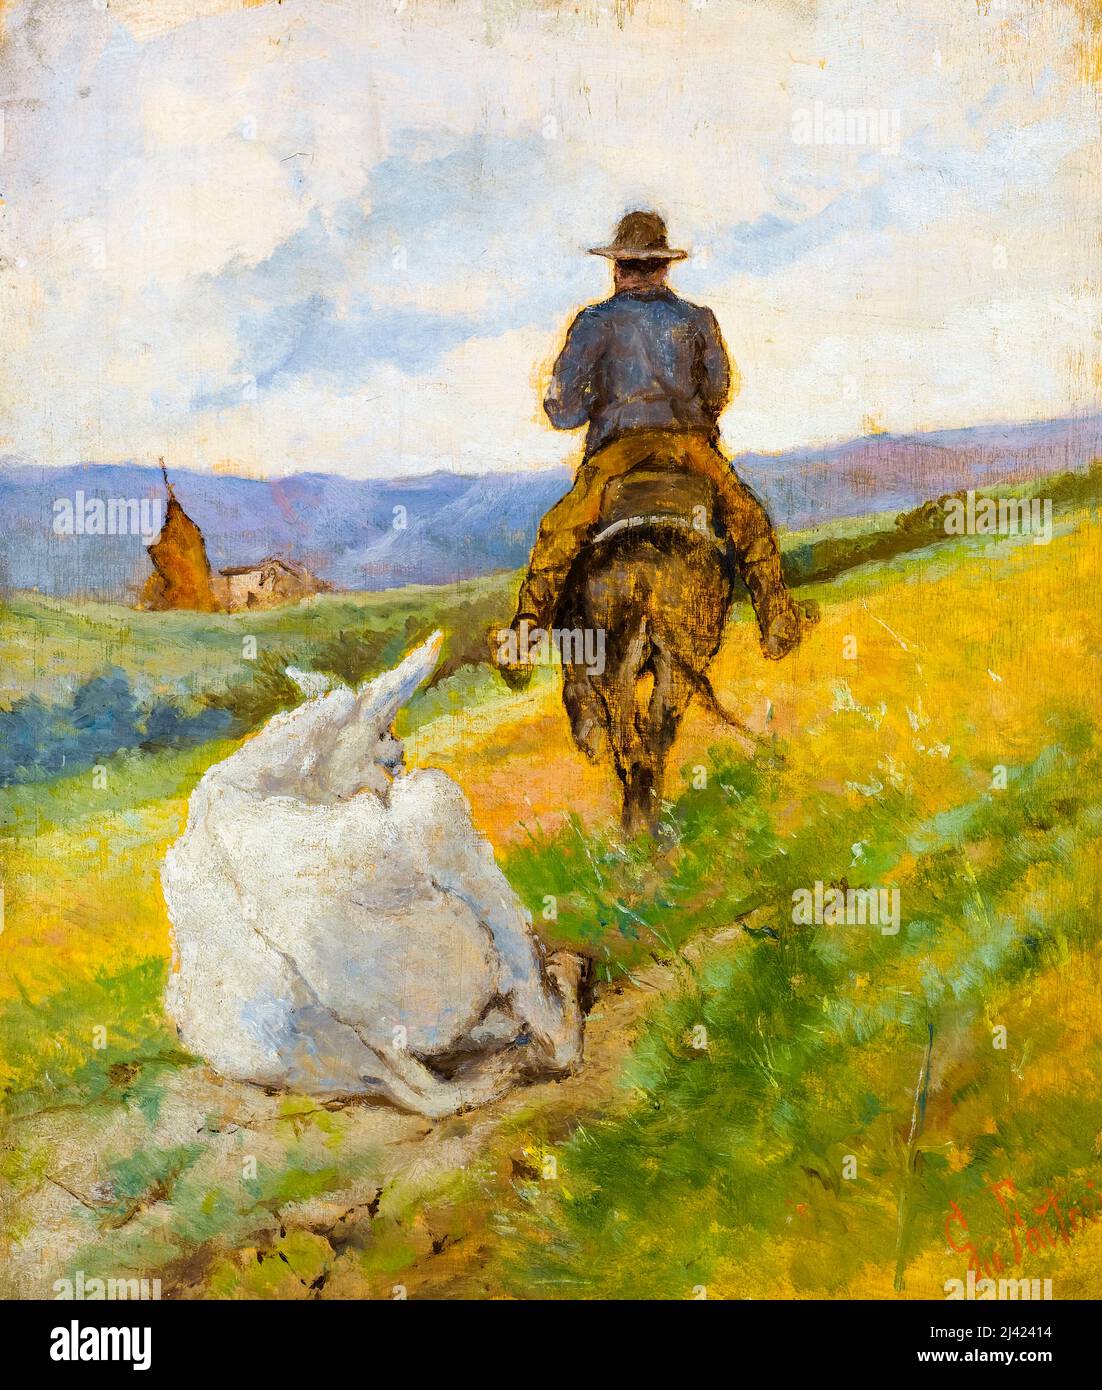 Giovanni Fattori, Buttero A Cavallo E Mulo Bianco, (Buttero On Horseback And White Mule), painting before 1908 Stock Photo